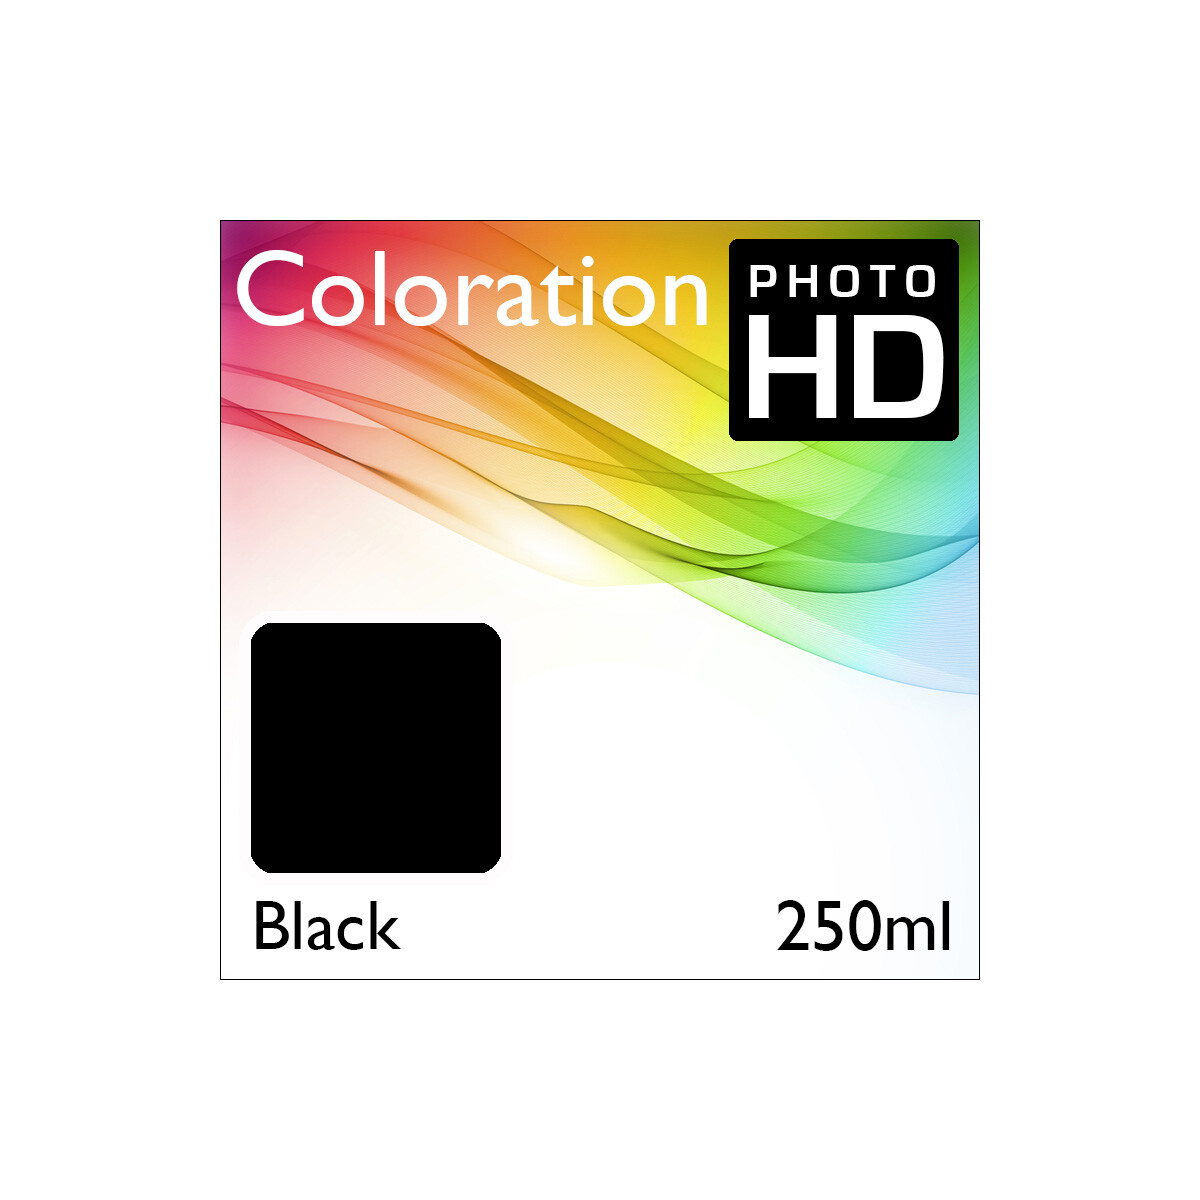 Coloration PhotoHD Bottle Black 250ml